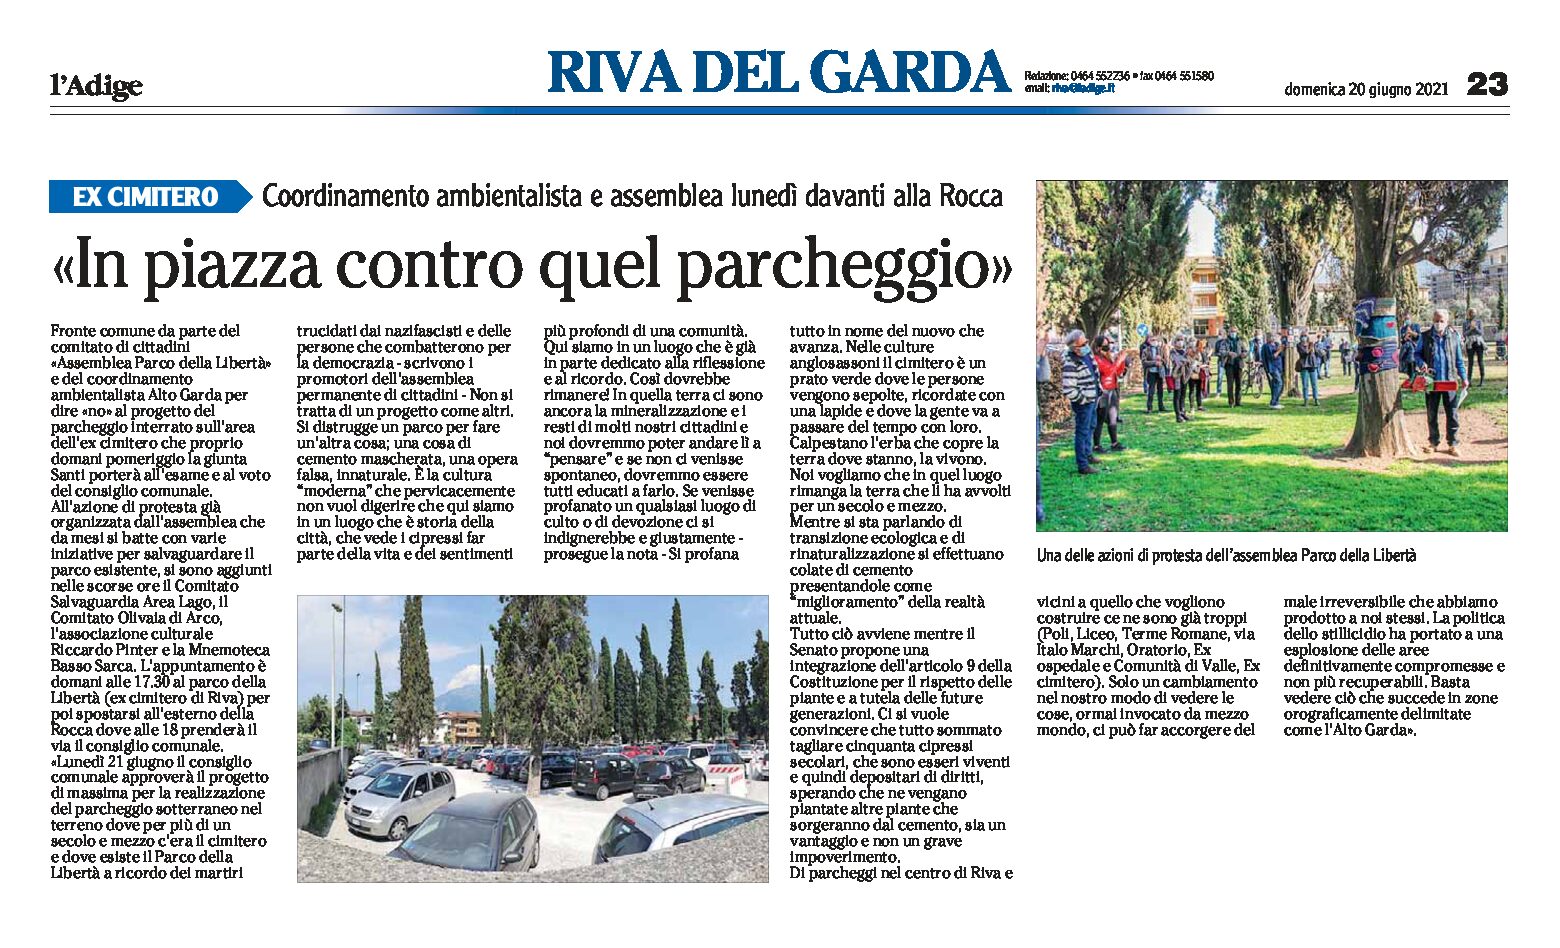 Riva, ex cimitero: il coordinamento ambientalista in piazza contro il parcheggio interrato